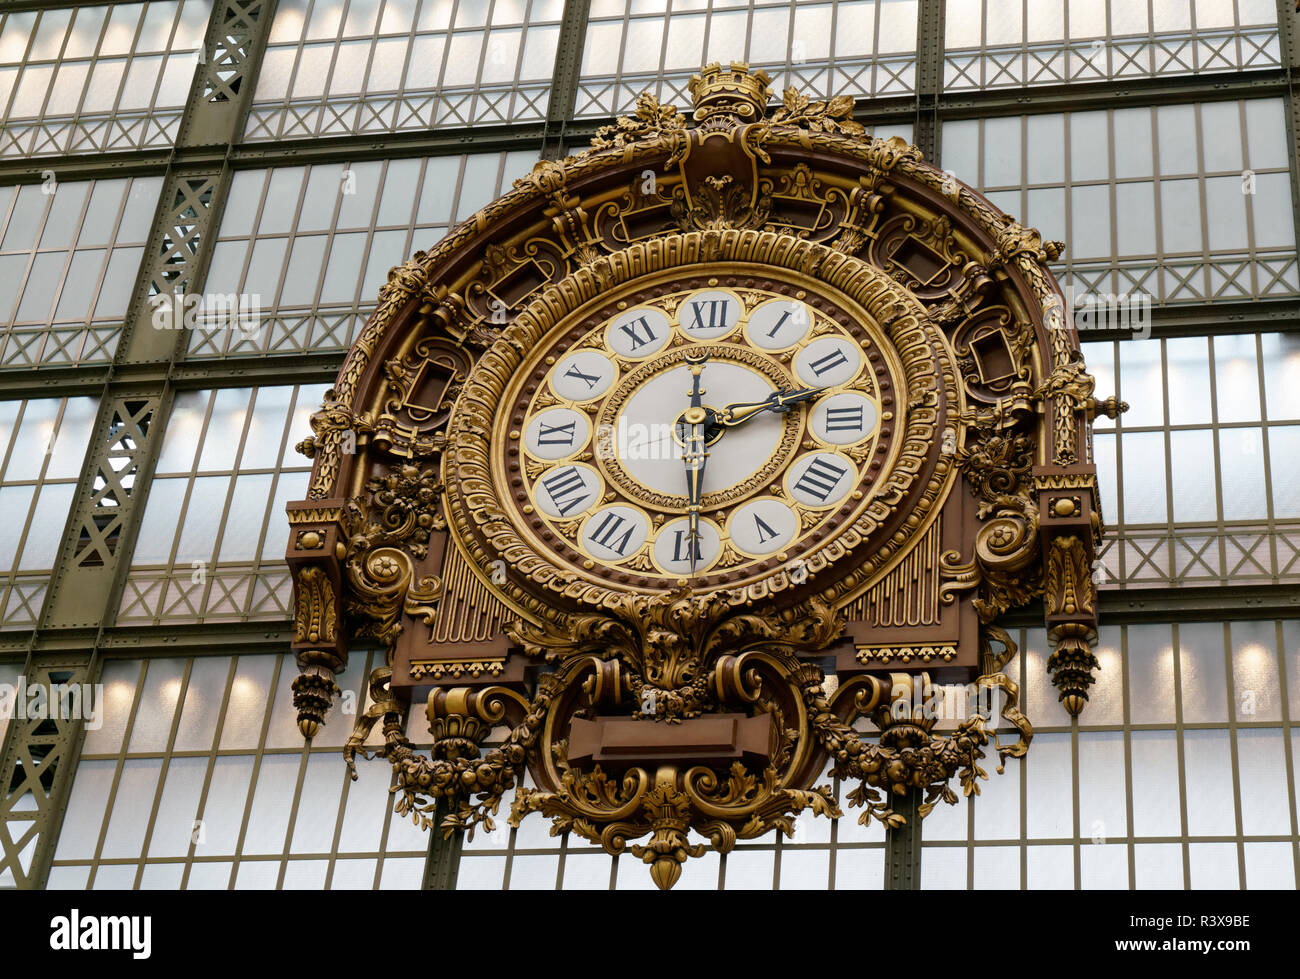 Il Musee d'Orsay a Parigi una volta era una stazione ferroviaria e ha molte grandi orologi, di cui questo è il più ornato. Gen. 10, 2018 Foto Stock